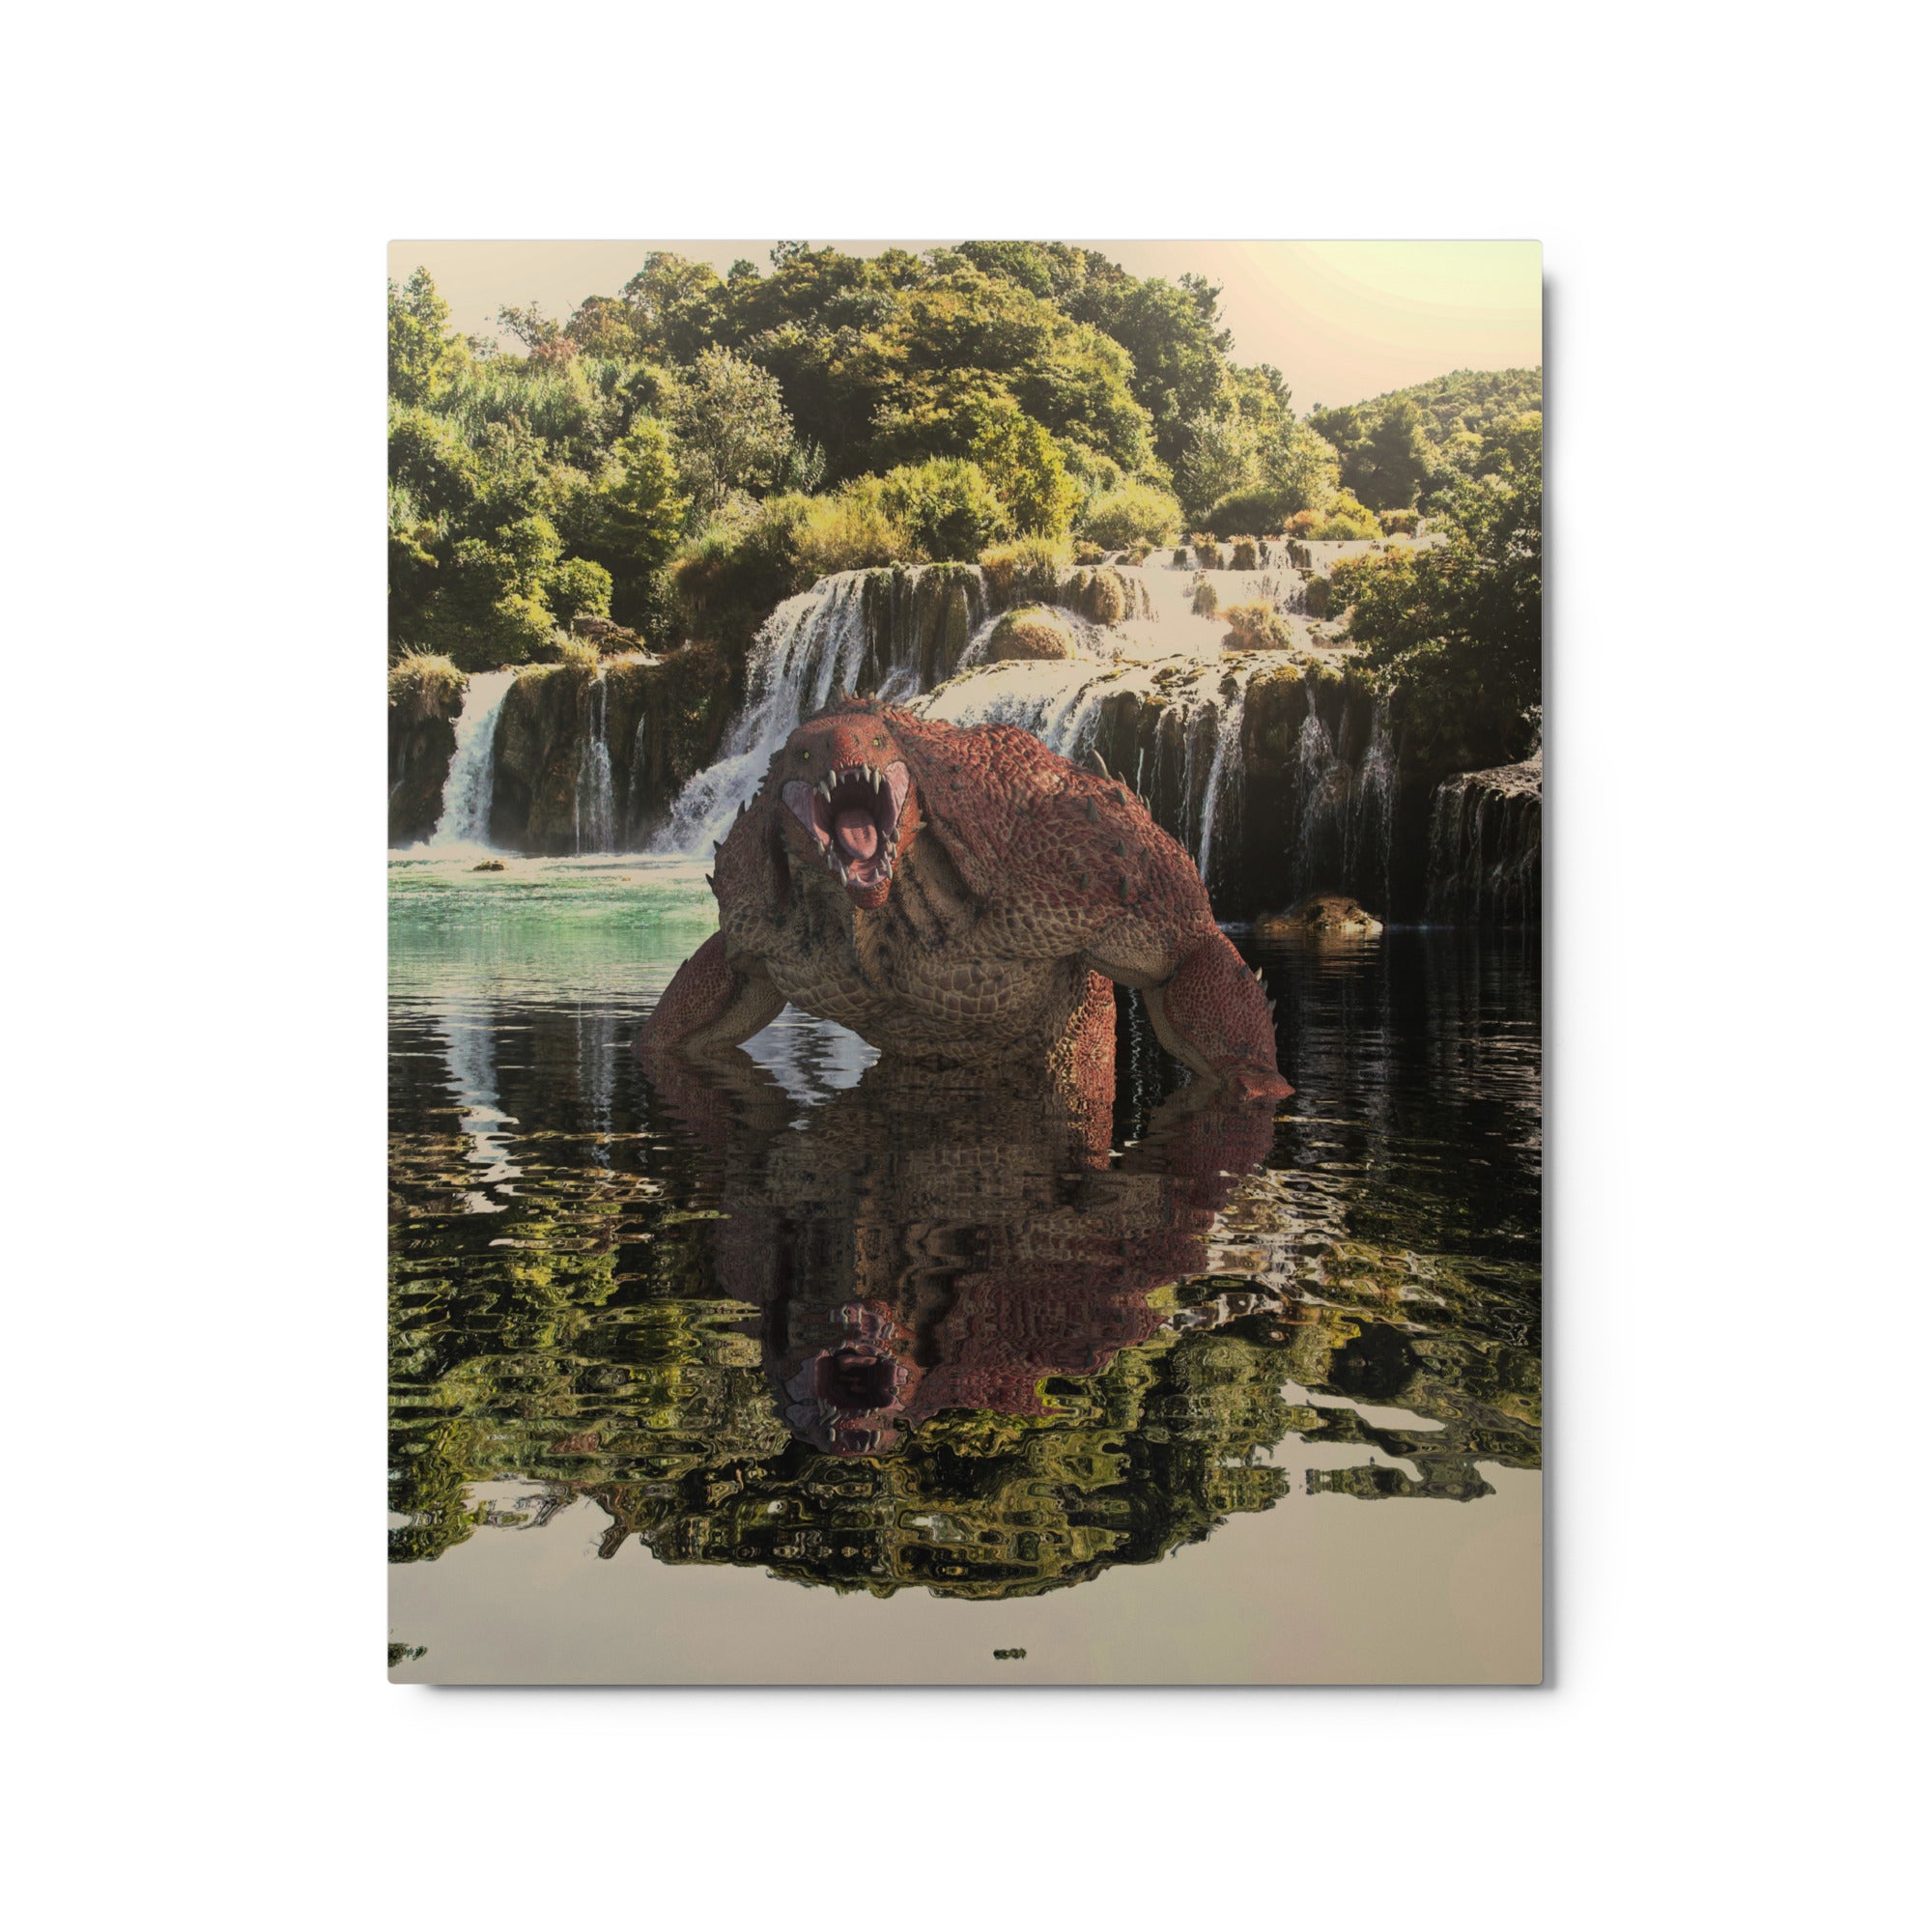 Metal Prints | Carno Reptilian in Lake